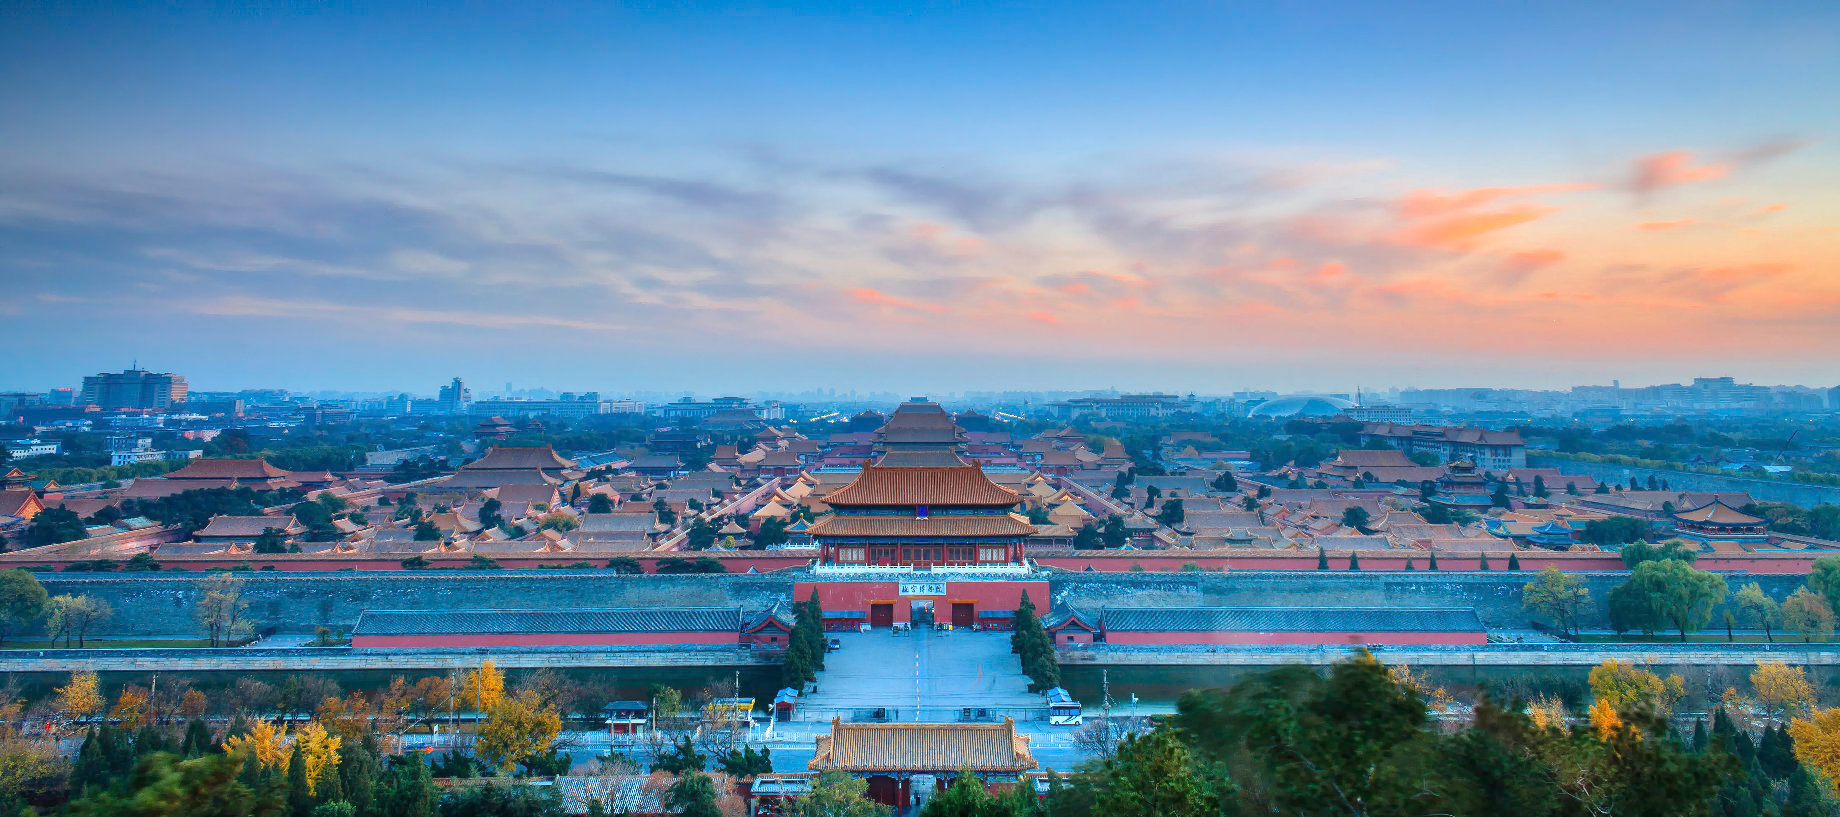 Mandarin Oriental Wangfujing, Beijing Hotel – Beijing, China – Forbidden City Imperial Palace Museum